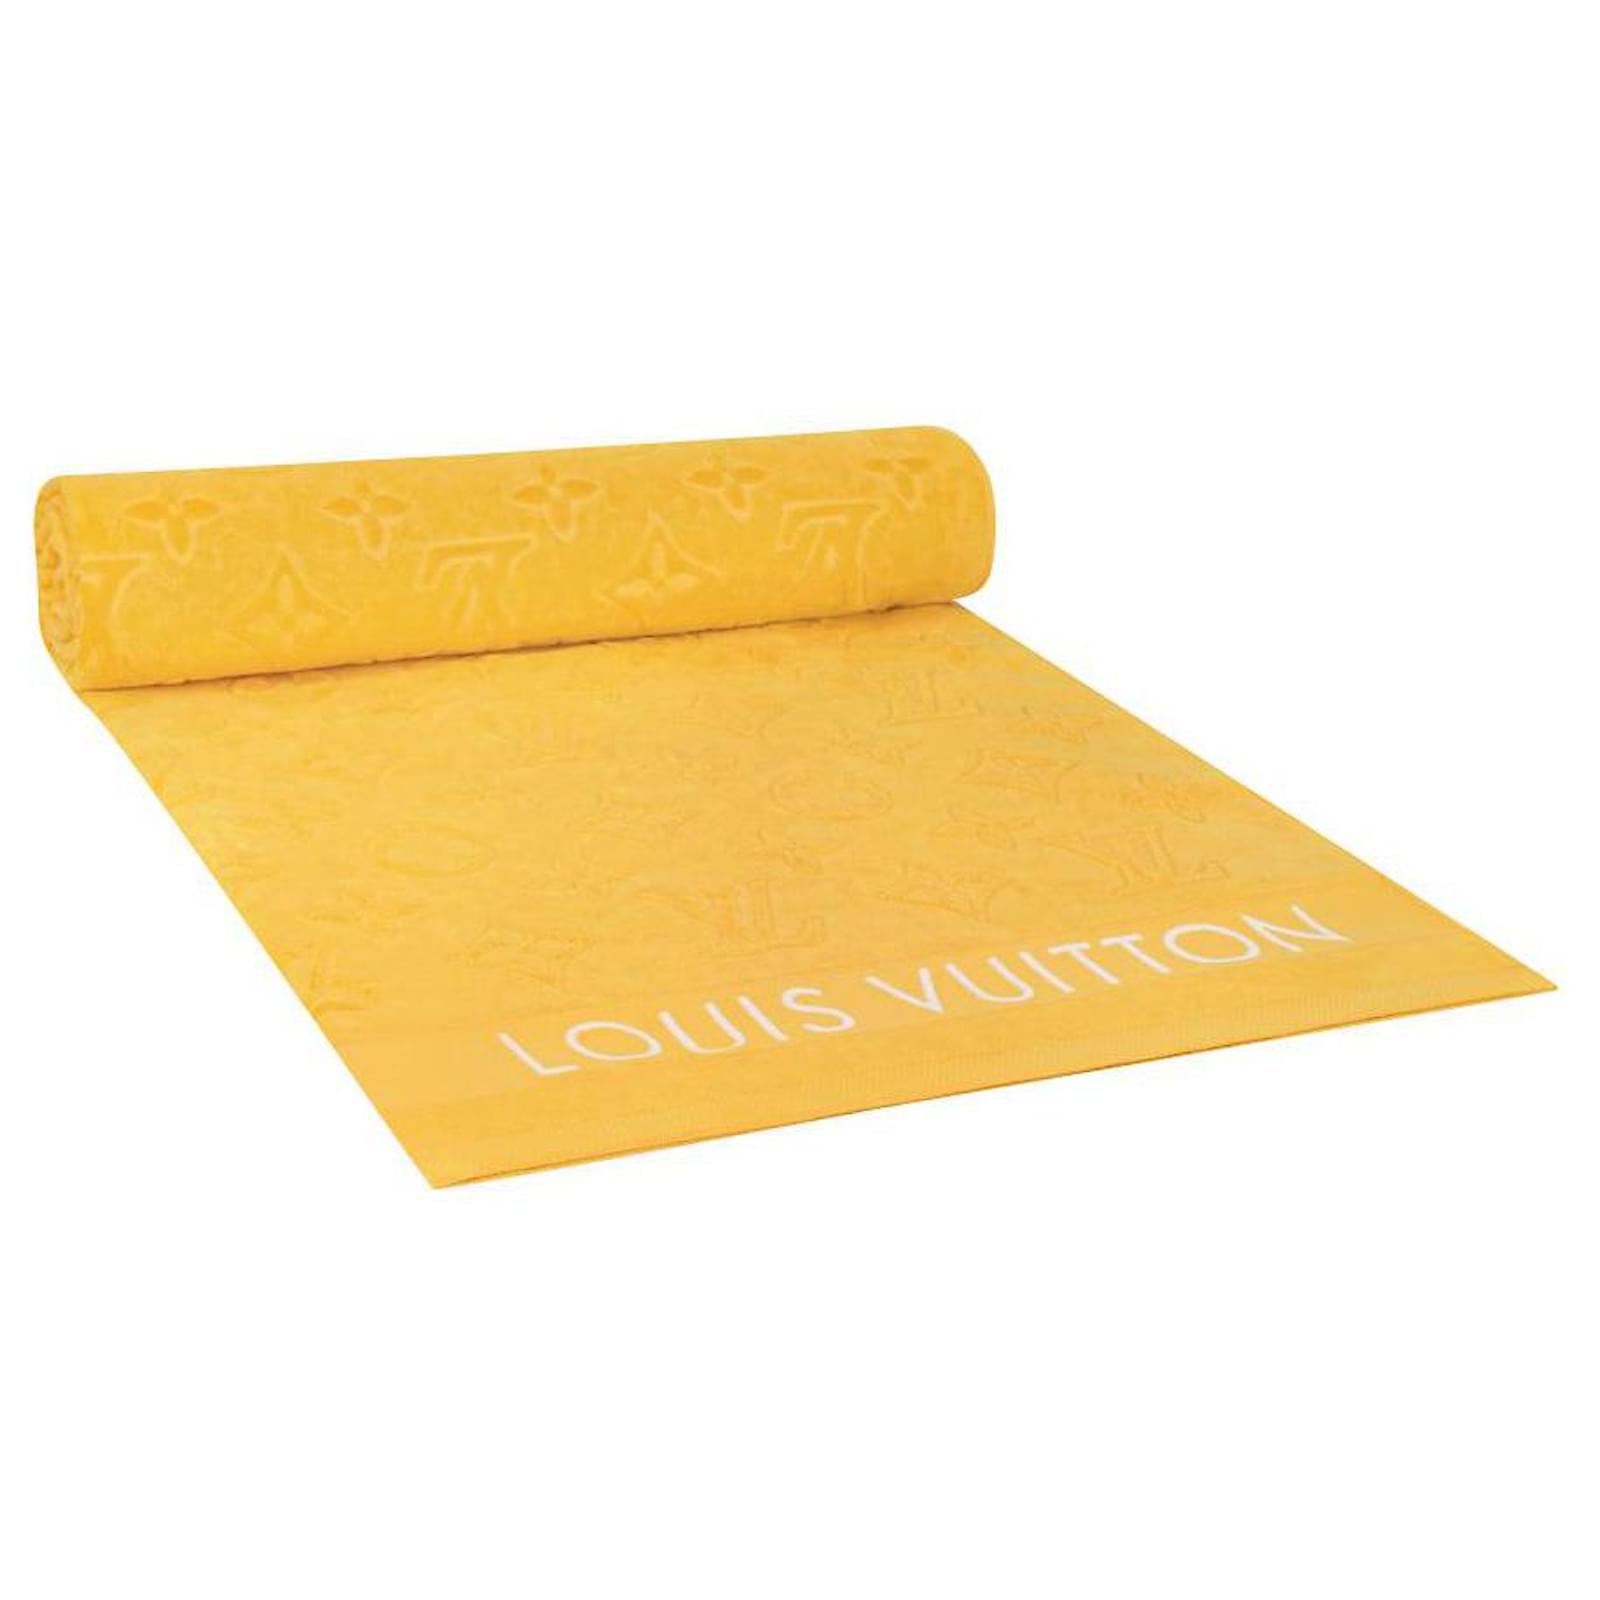 Louis Vuitton beach towel bath towel